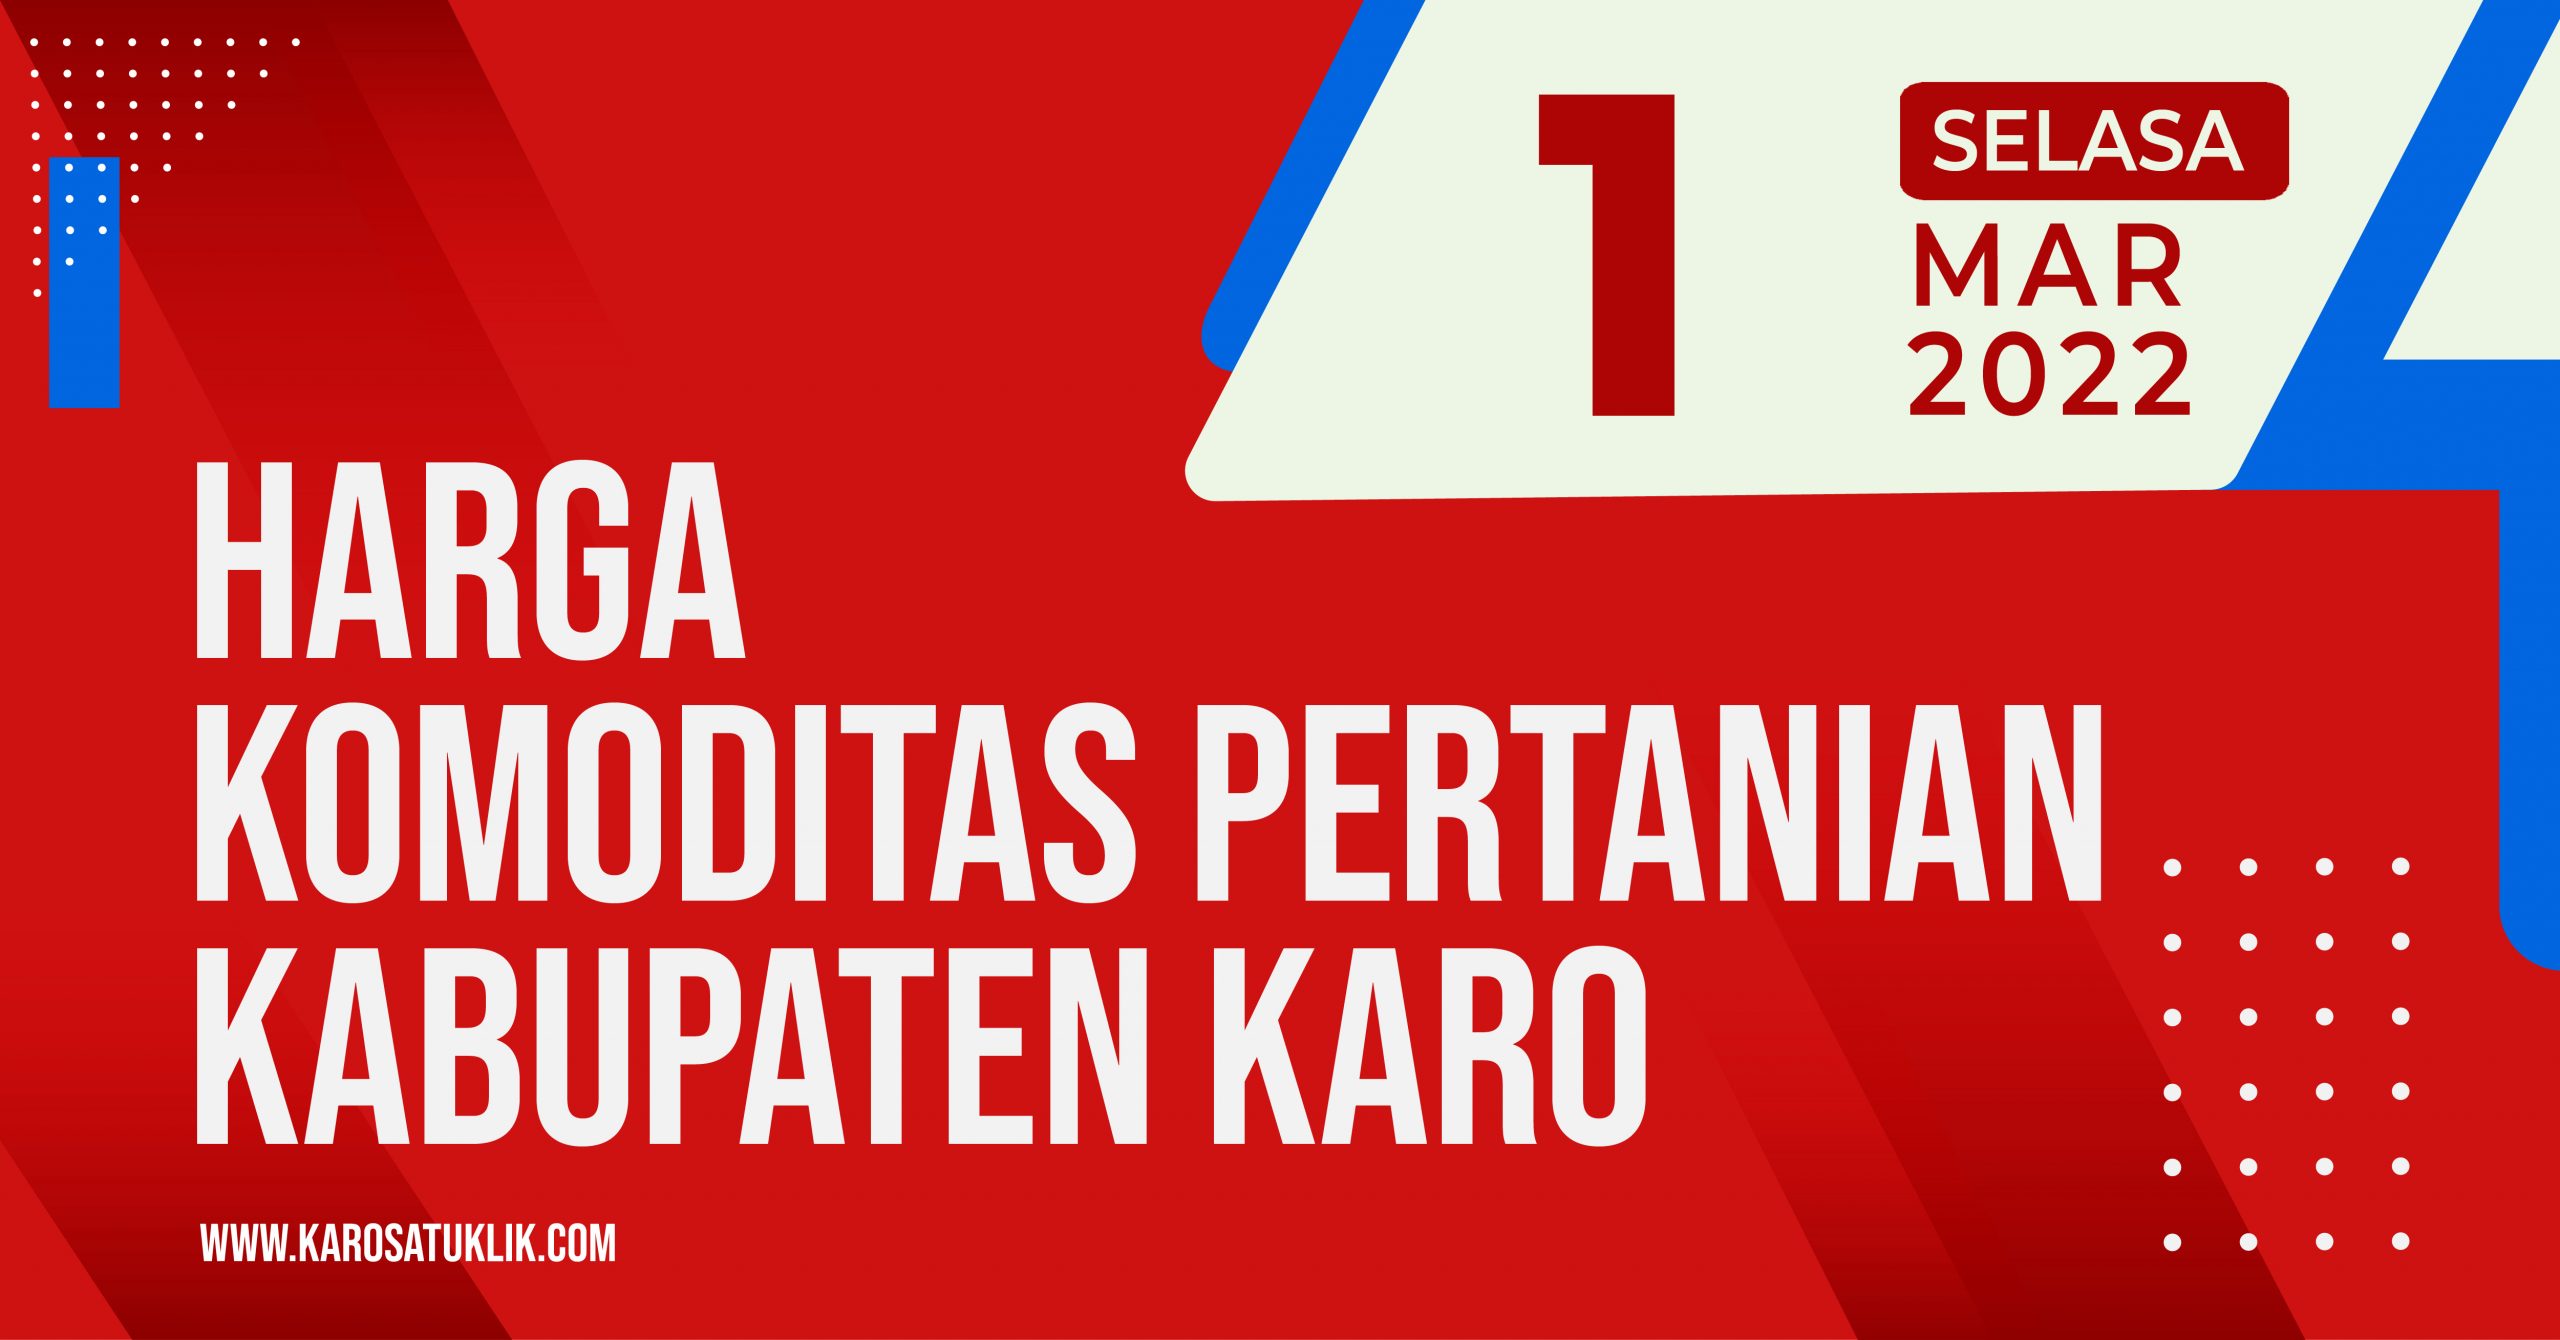 Harga Komoditas Pertanian Kabupaten Karo 1 Maret 2022